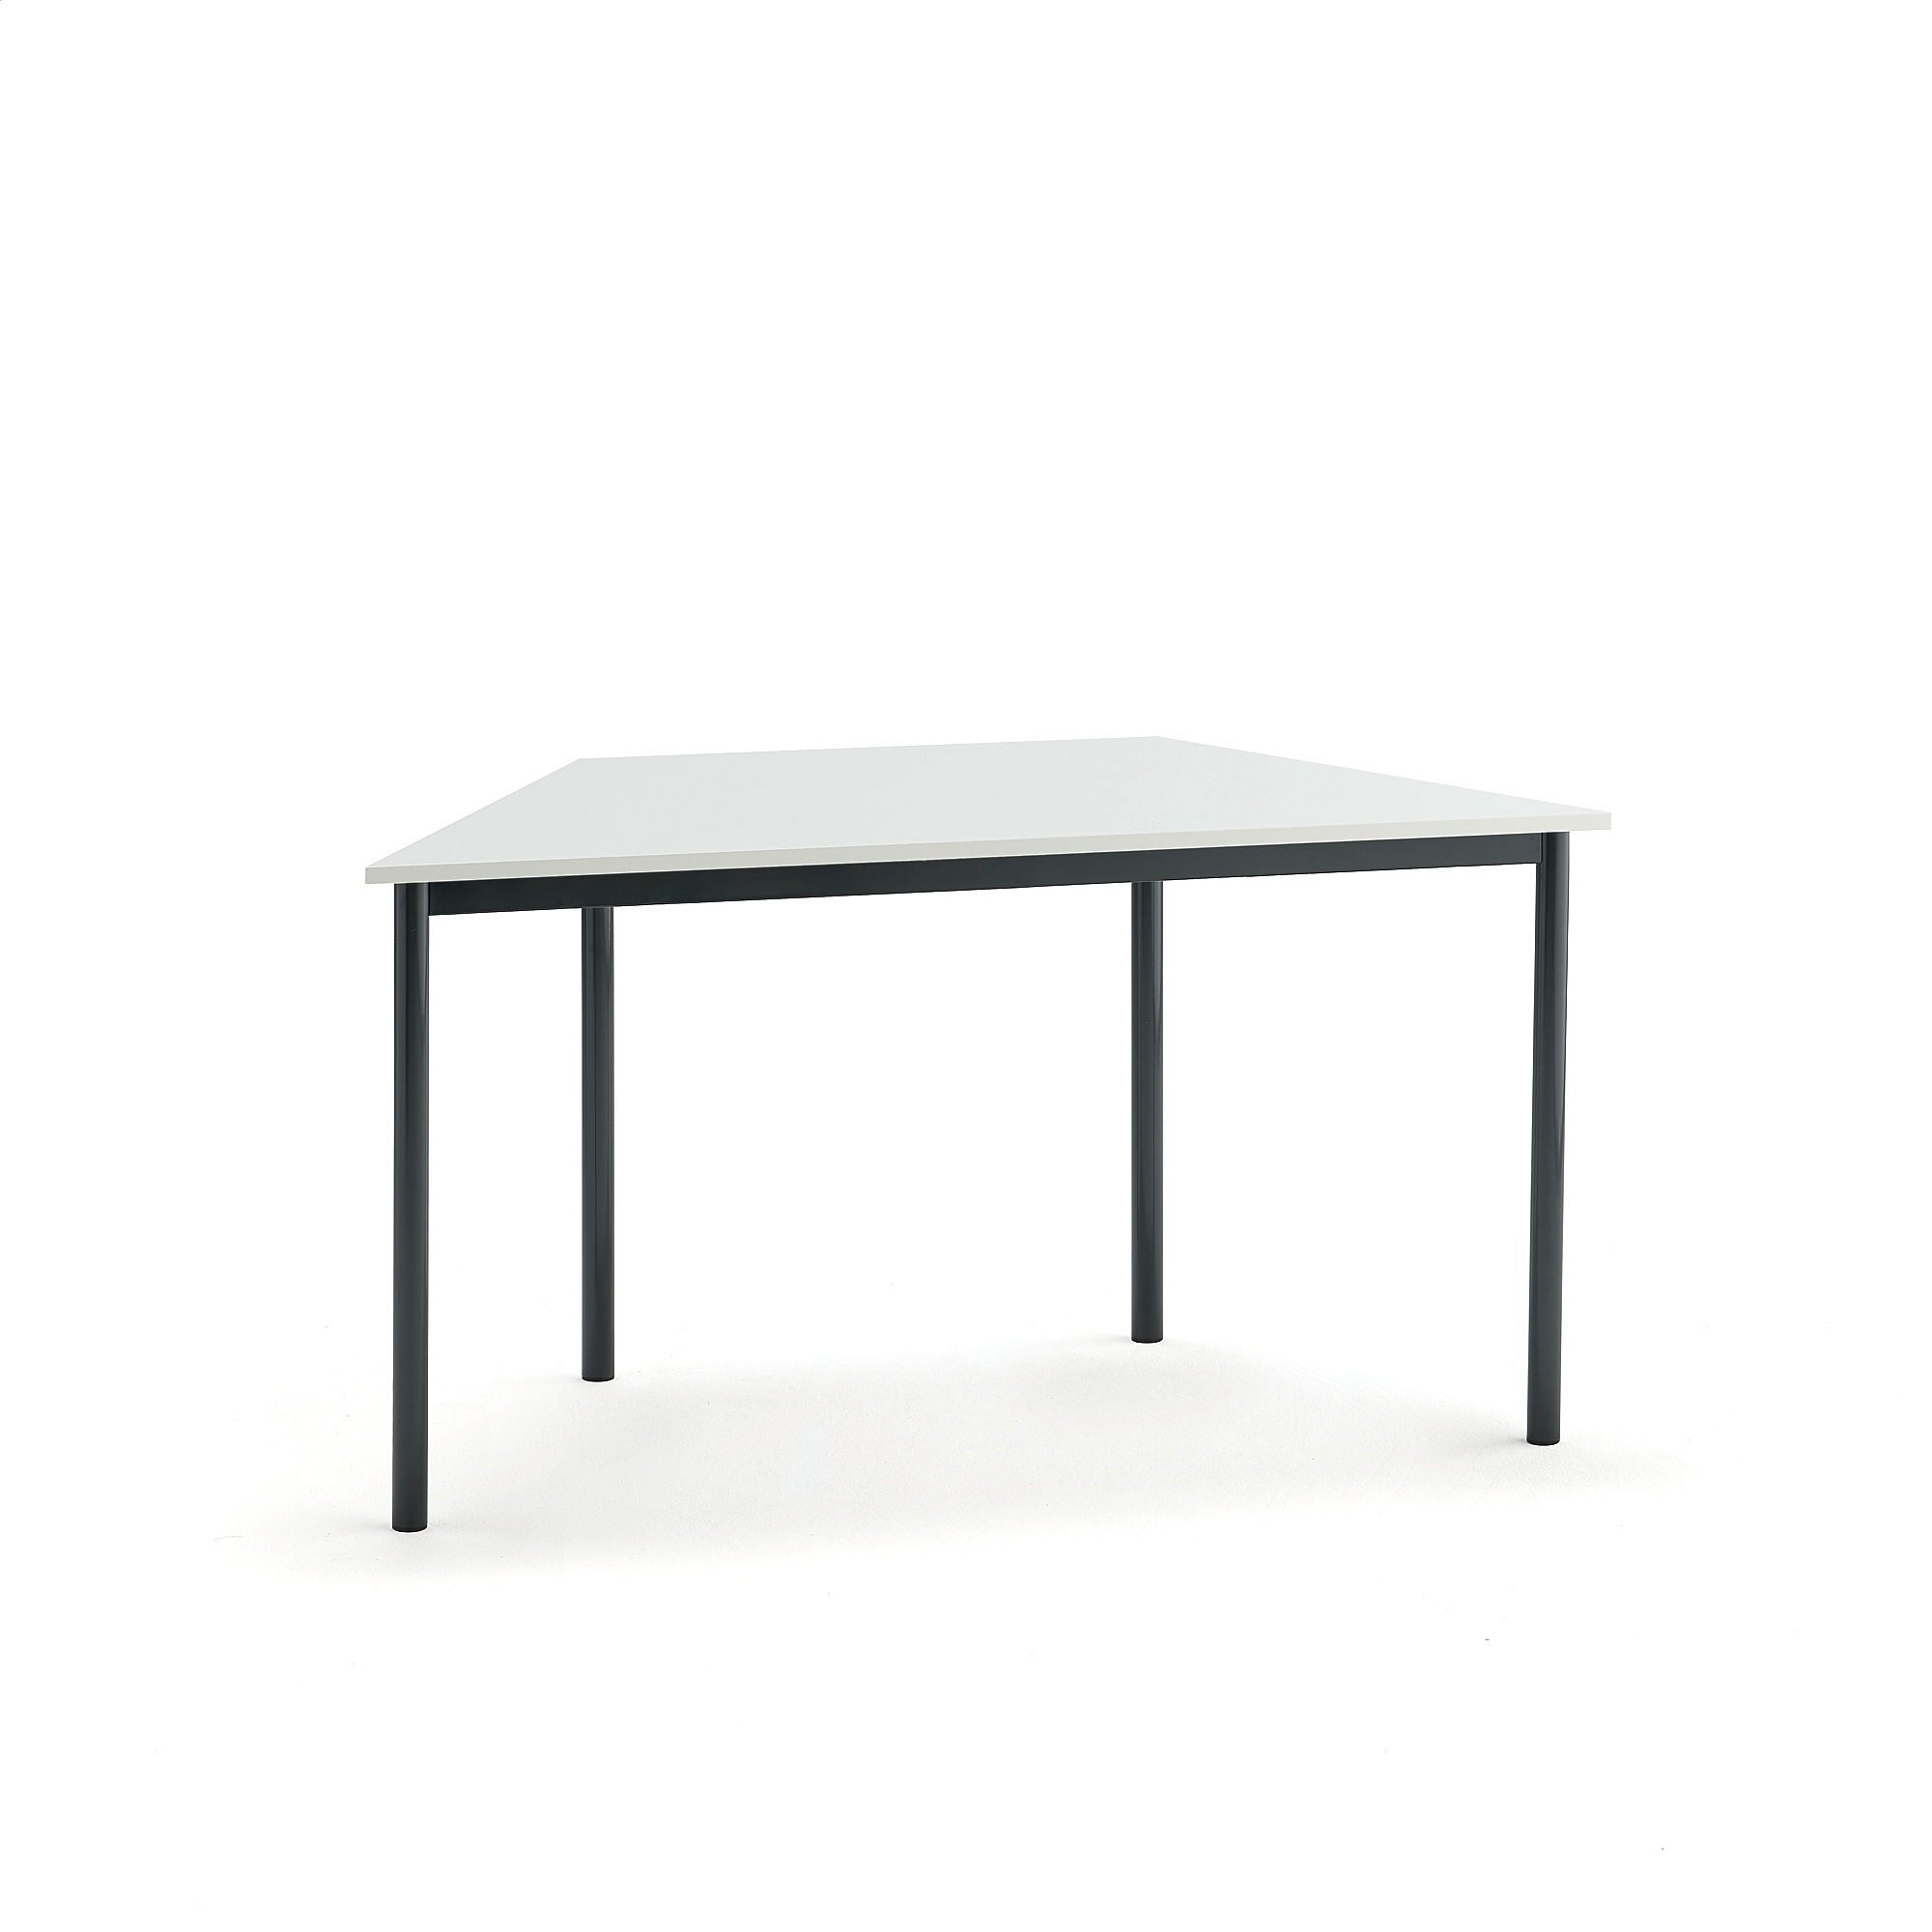 Stůl SONITUS TRAPETS, 1200x600x720 mm, antracitově šedé nohy, HPL deska tlumící hluk, bílá